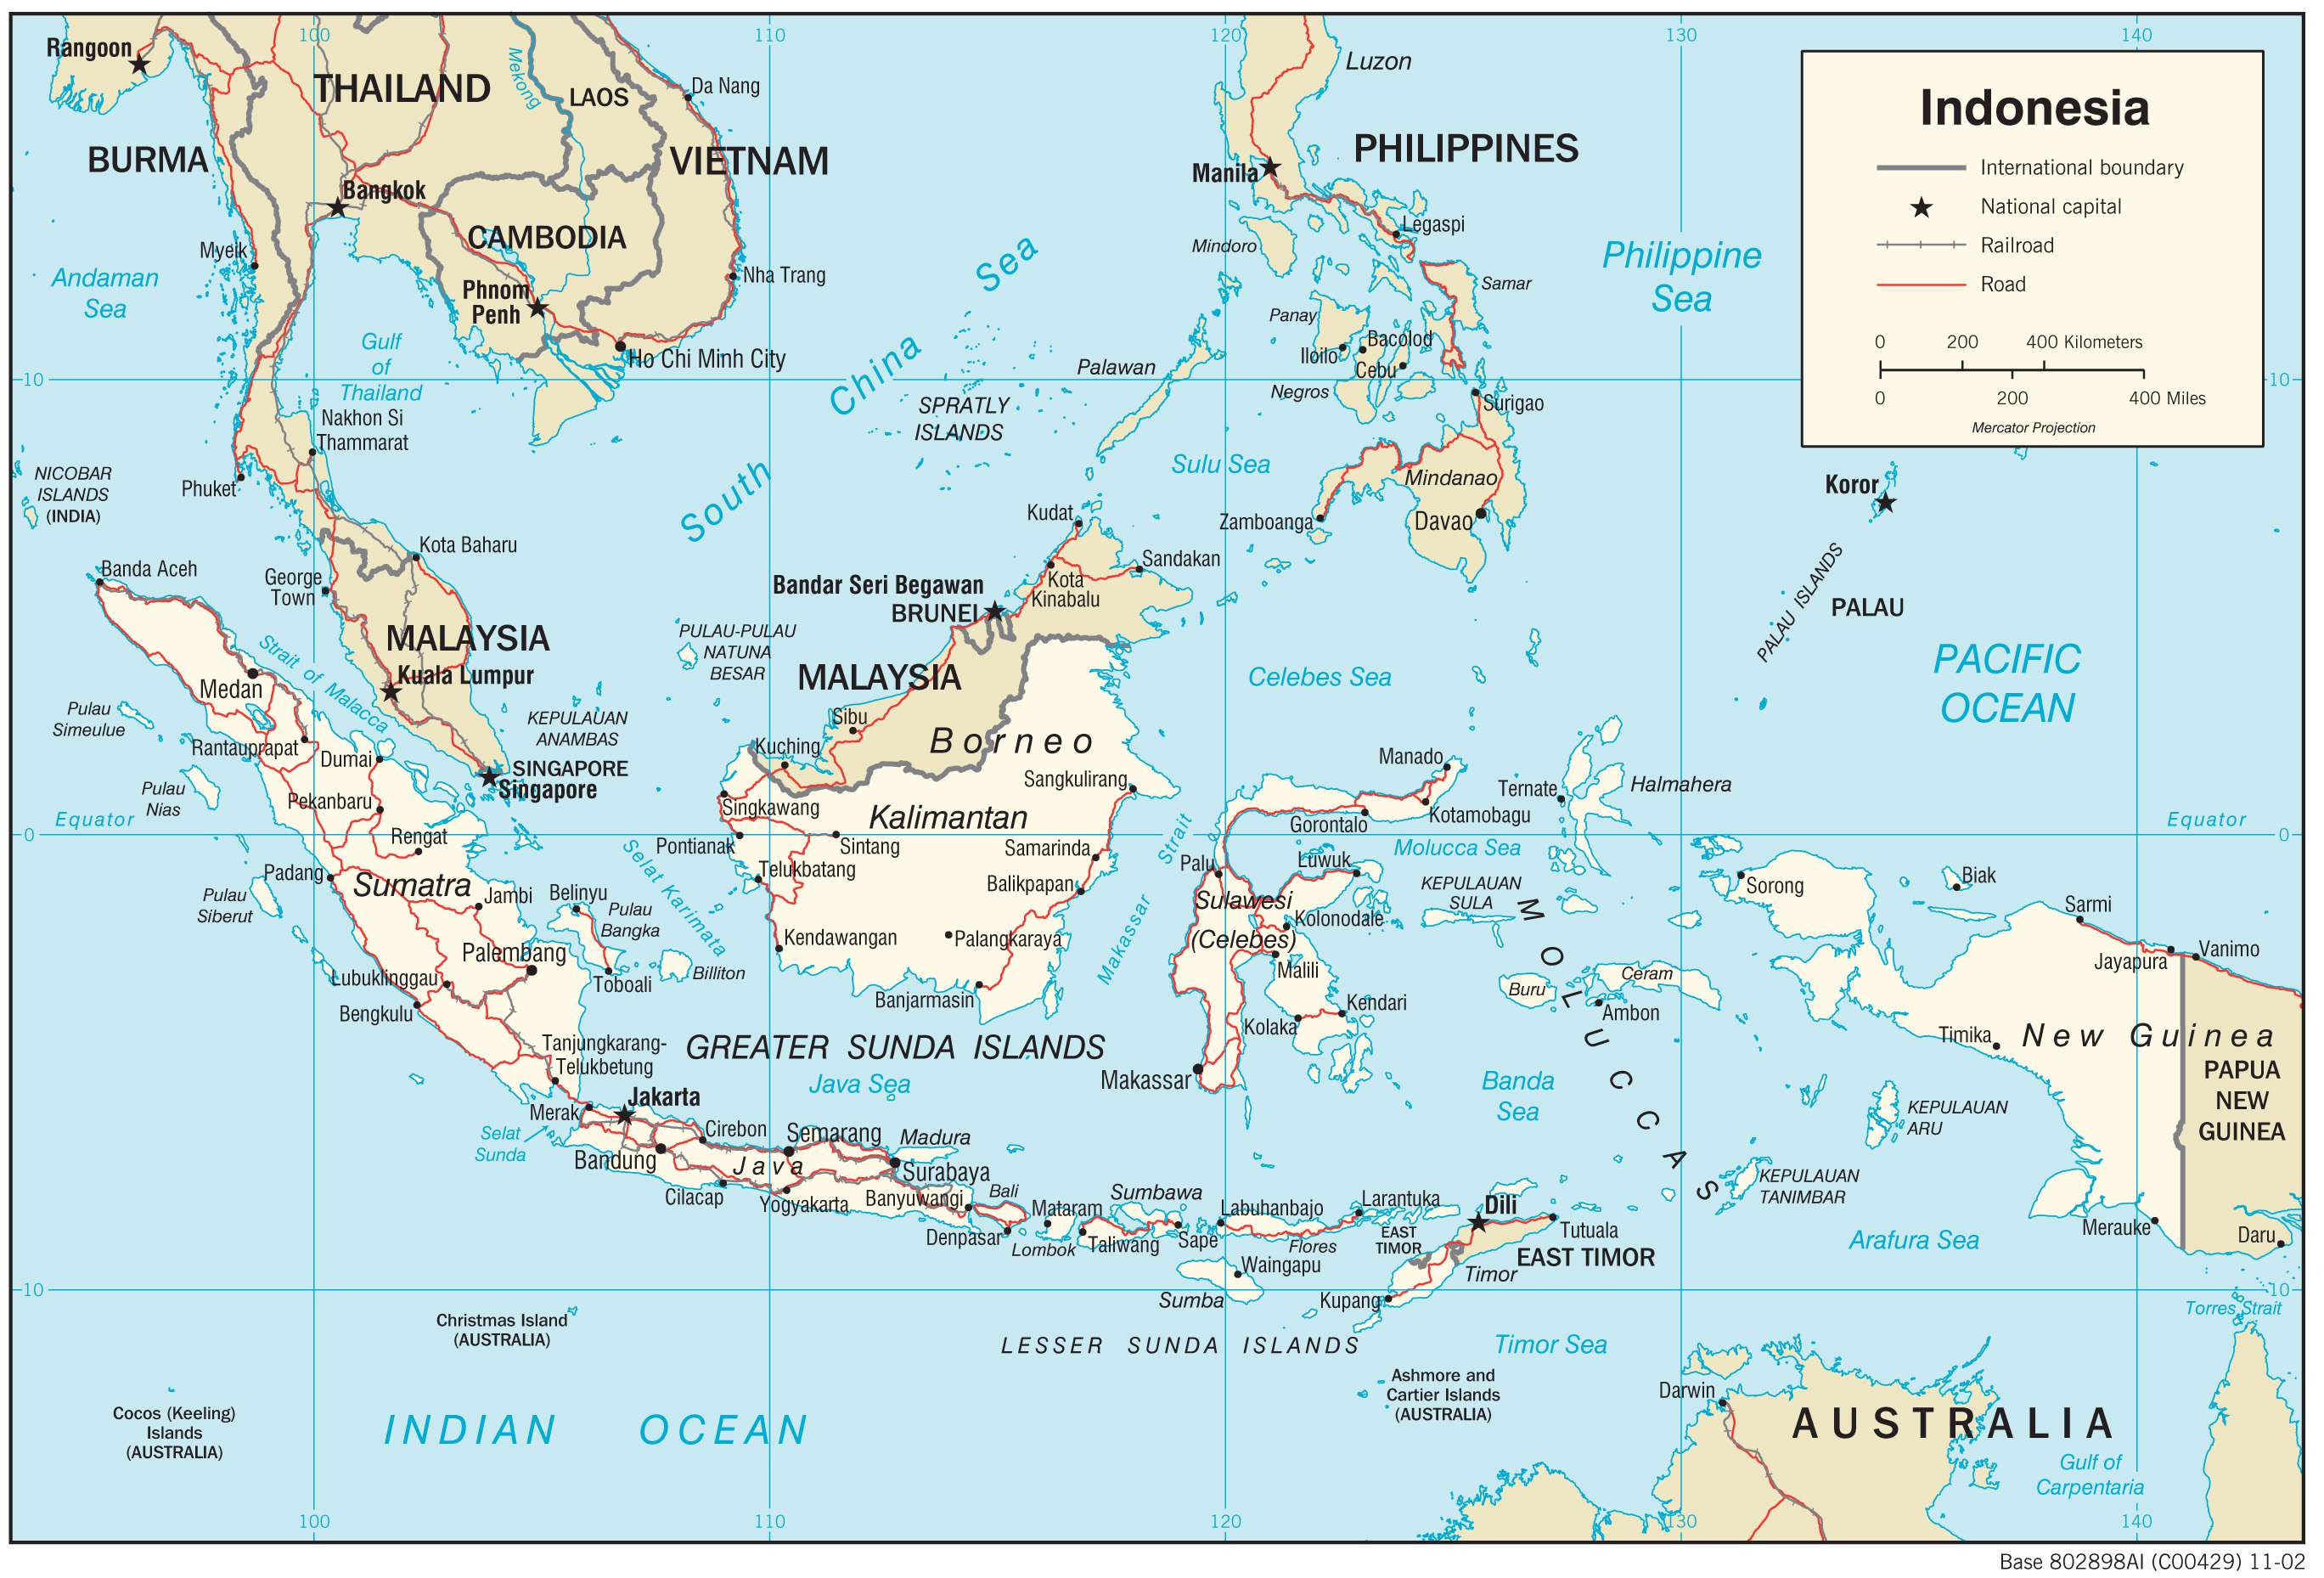 Khám phá địa ốc Indonesia trên bản đồ đầy màu sắc với vô số các dự án đất nền đẹp và tiềm năng. Tìm kiếm những điểm đắt địa và tiện ích xung quanh trong khu vực mà bạn quan tâm.